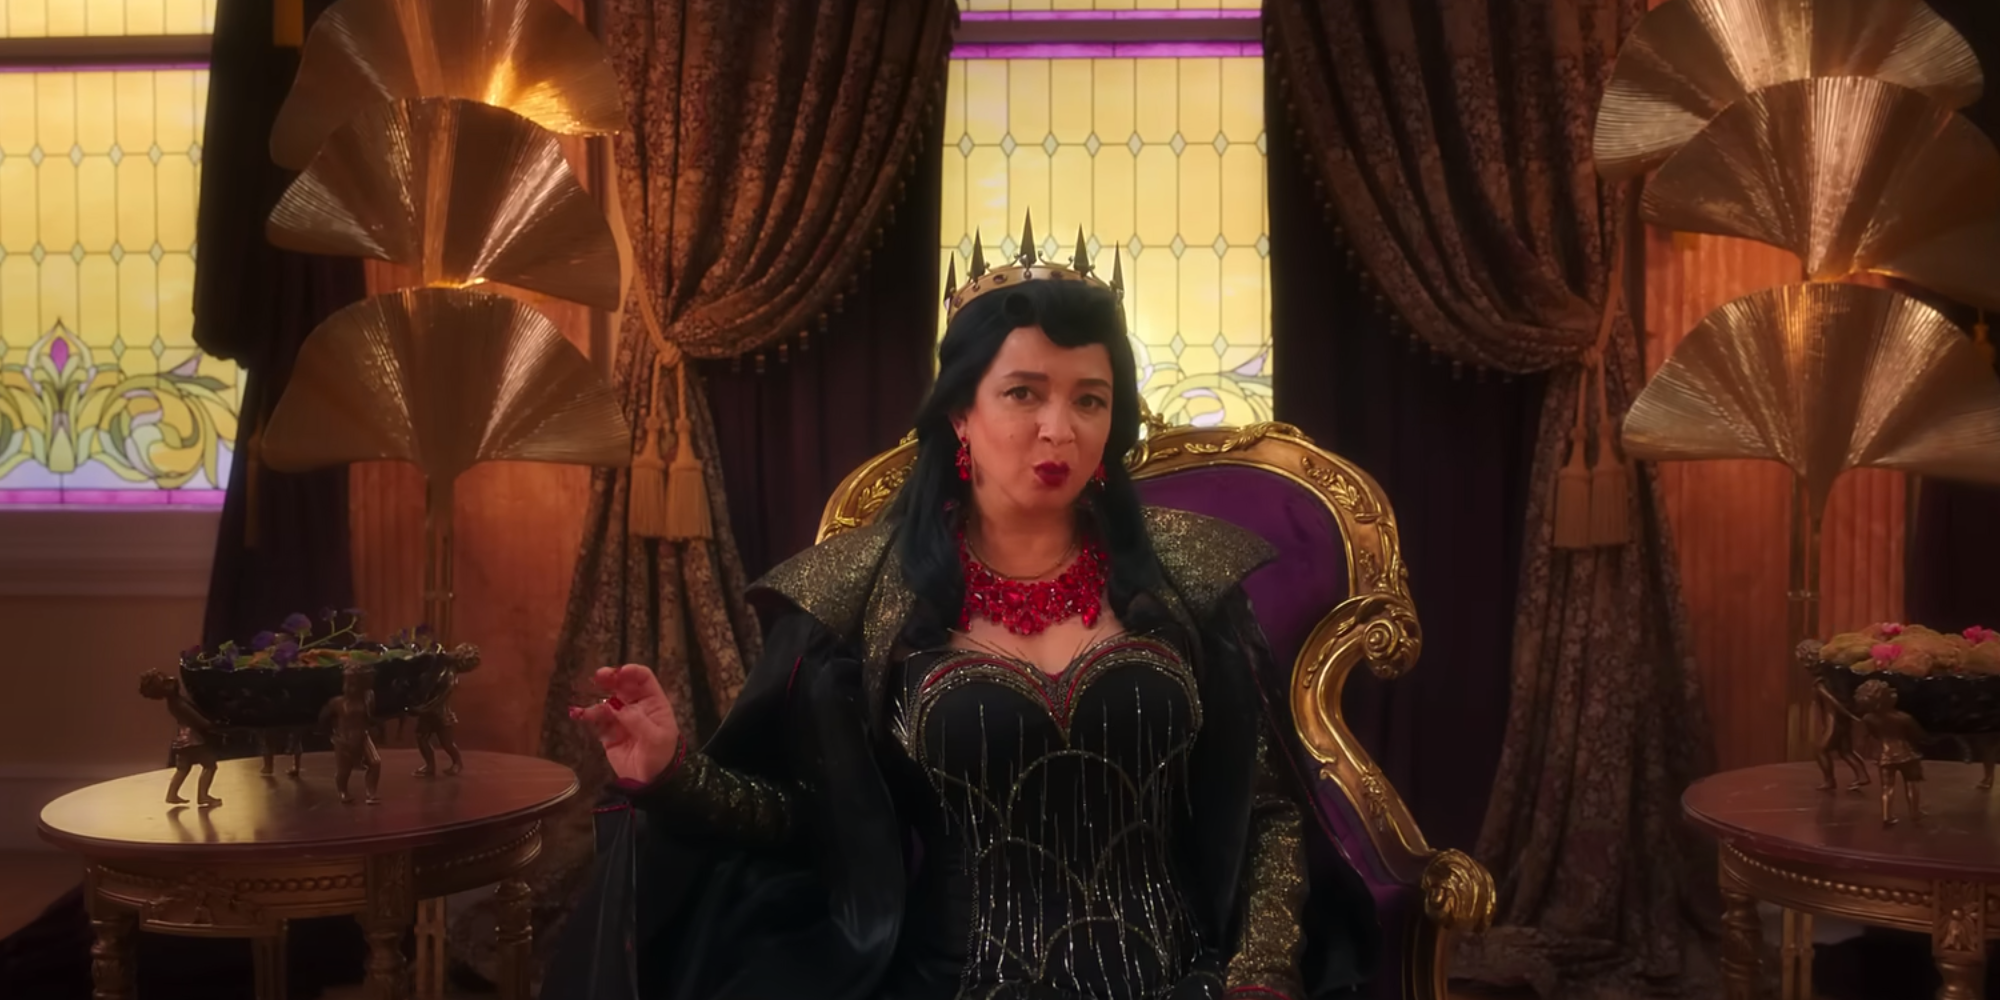 Malvina Monroe as an Evil Queen in Disenchanted